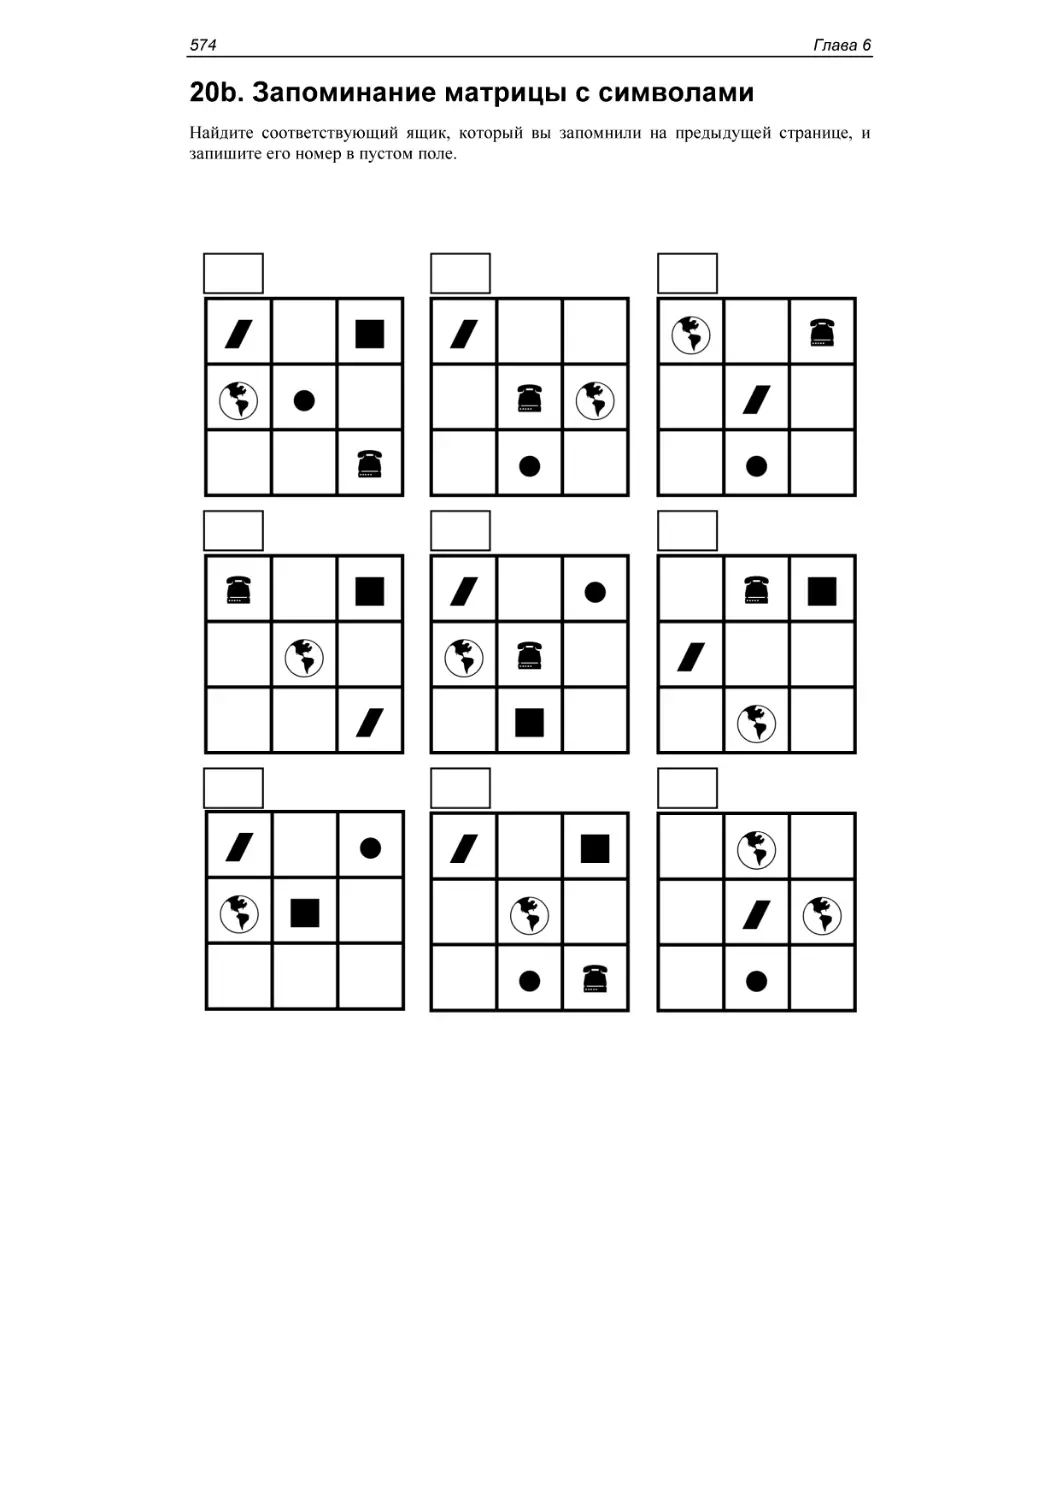 20b. Запоминание матрицы с символами